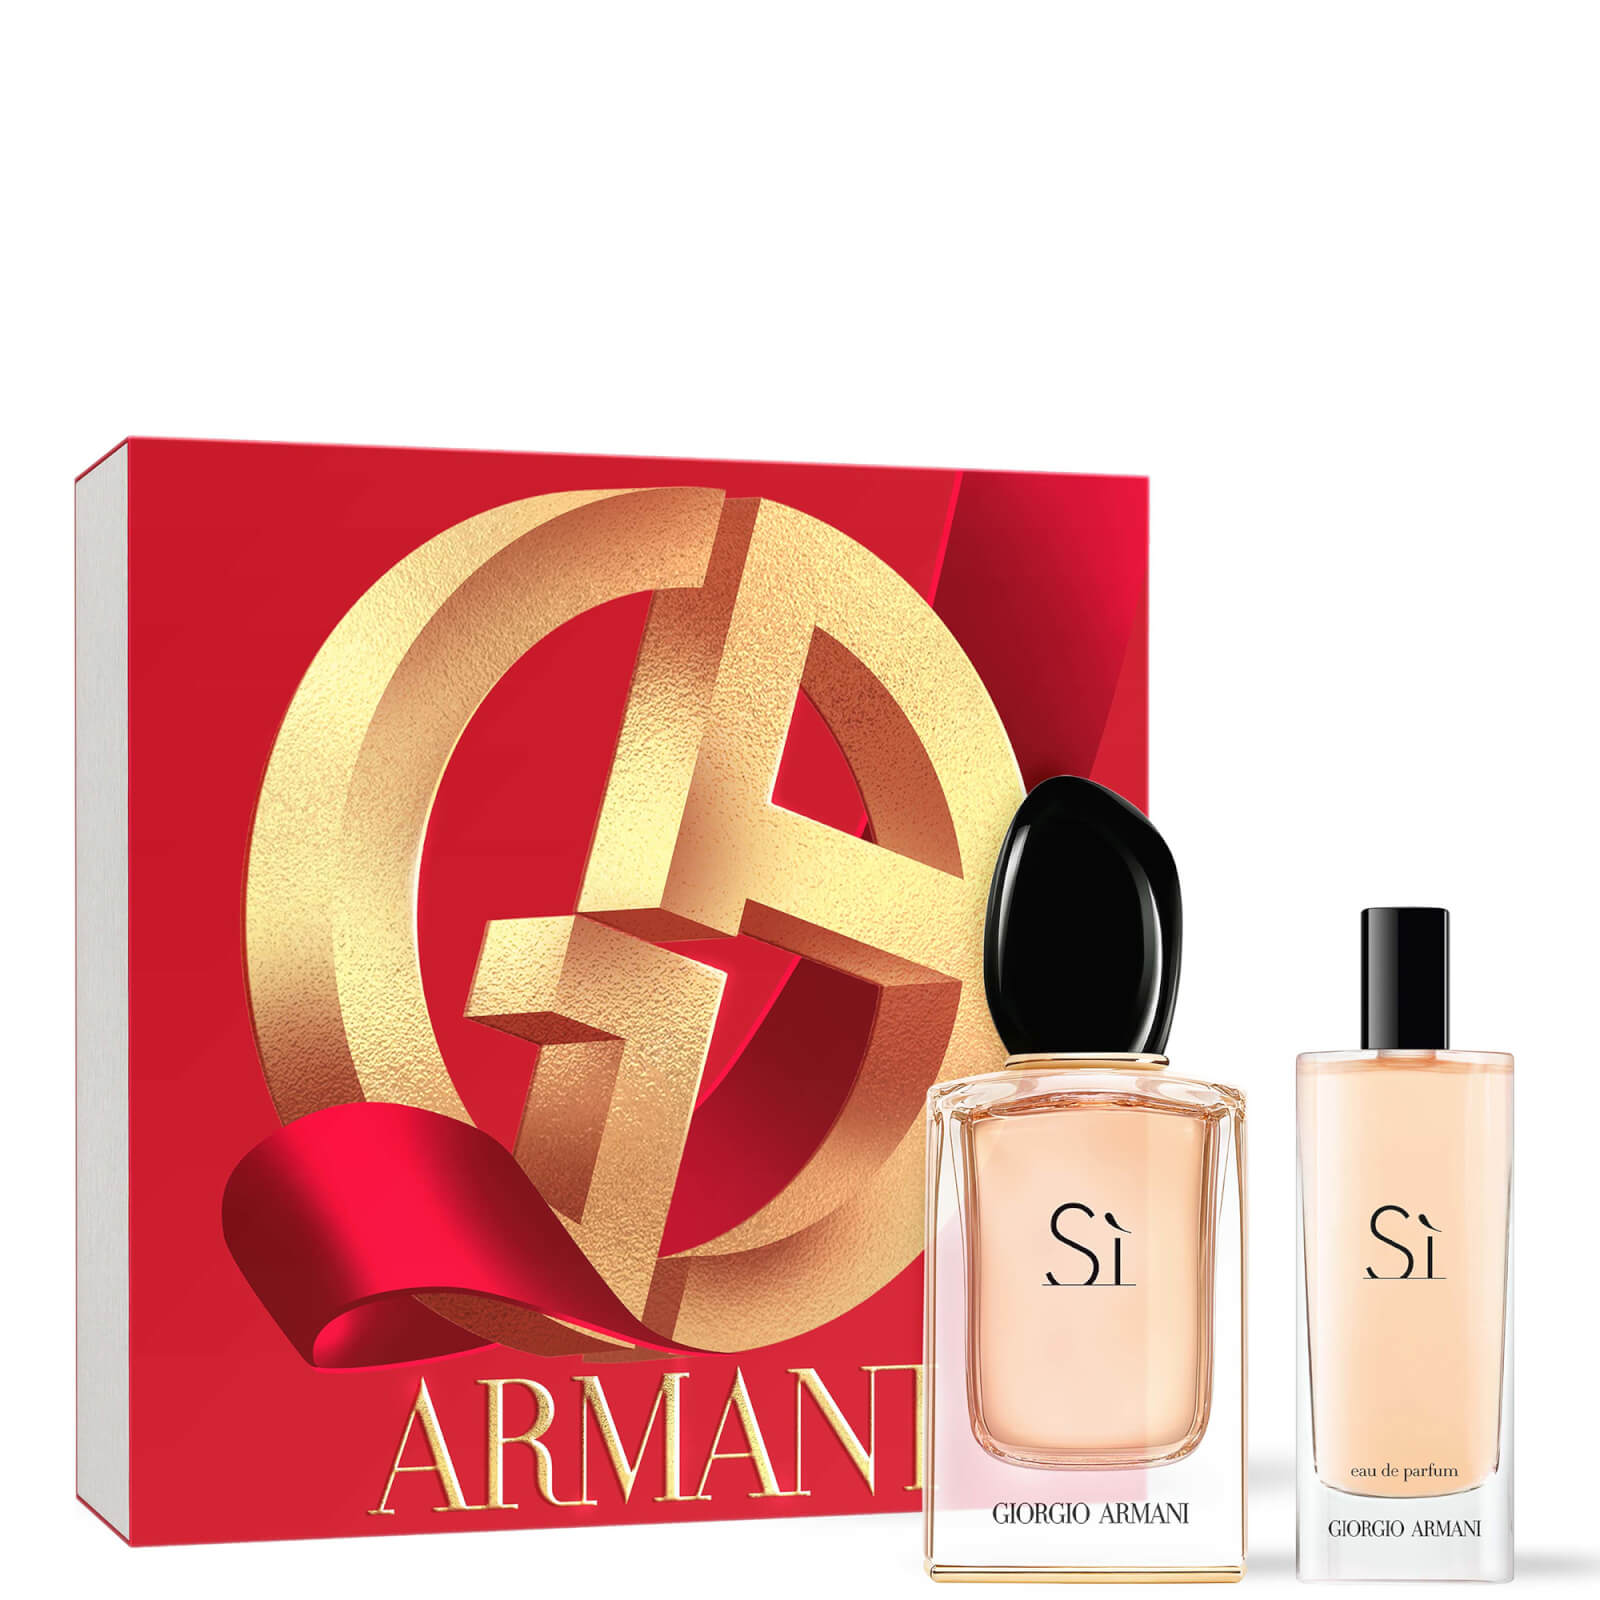 Armani Collezioni Si Eau De Parfum 50ml And Si Eau De Parfum 15ml Set In Multi